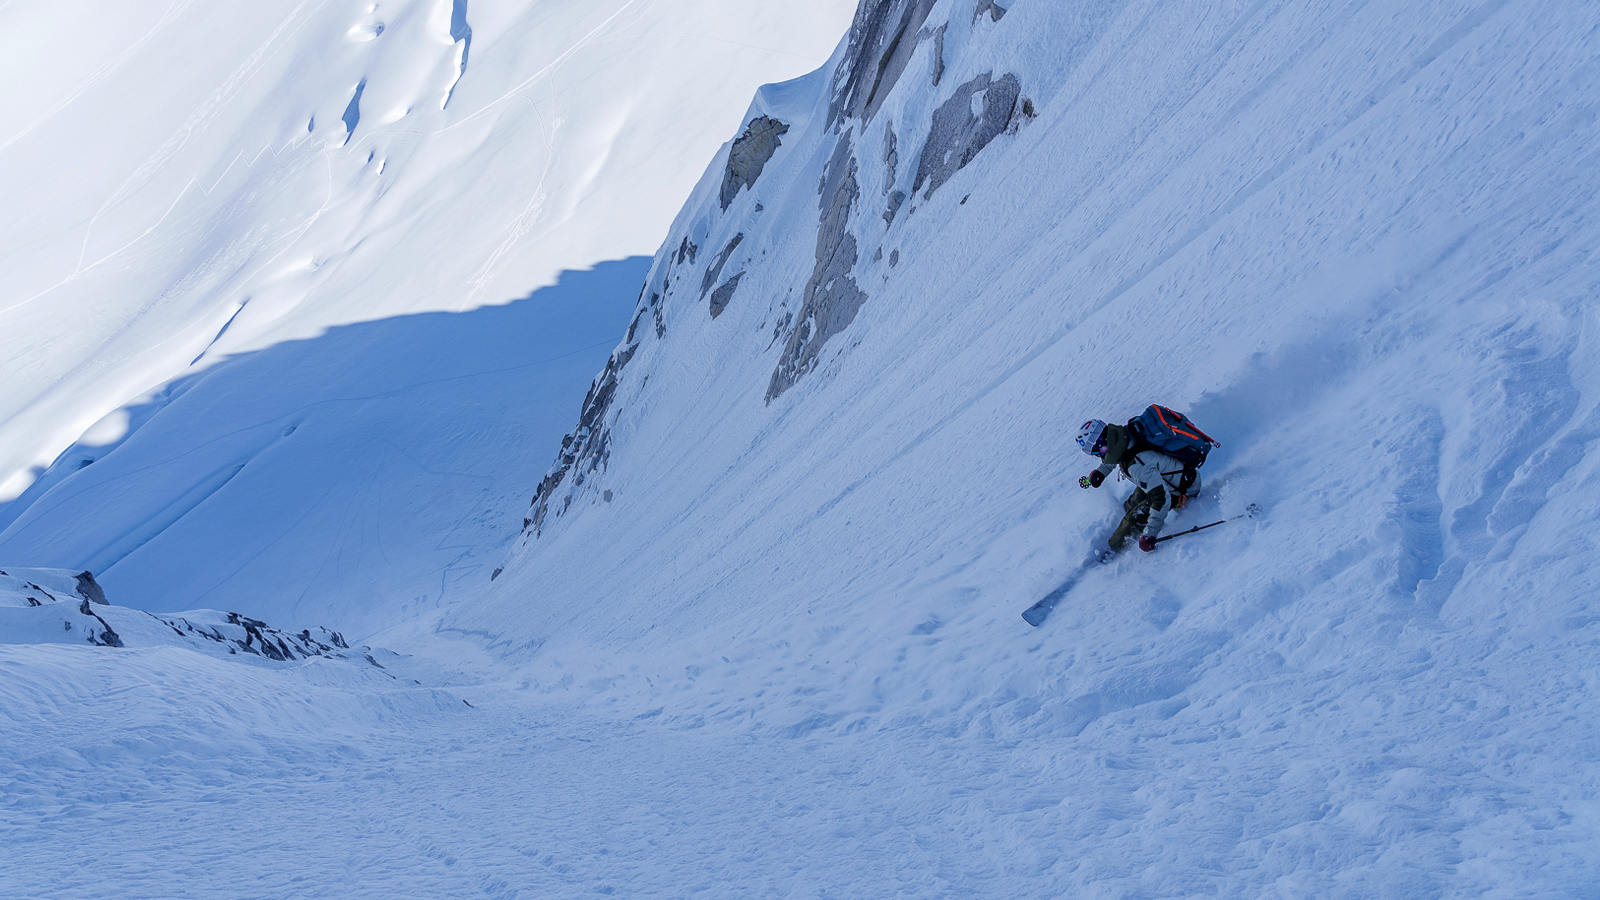 Salomon's Quality Ski Time Film Tour off the season - FREESKIER